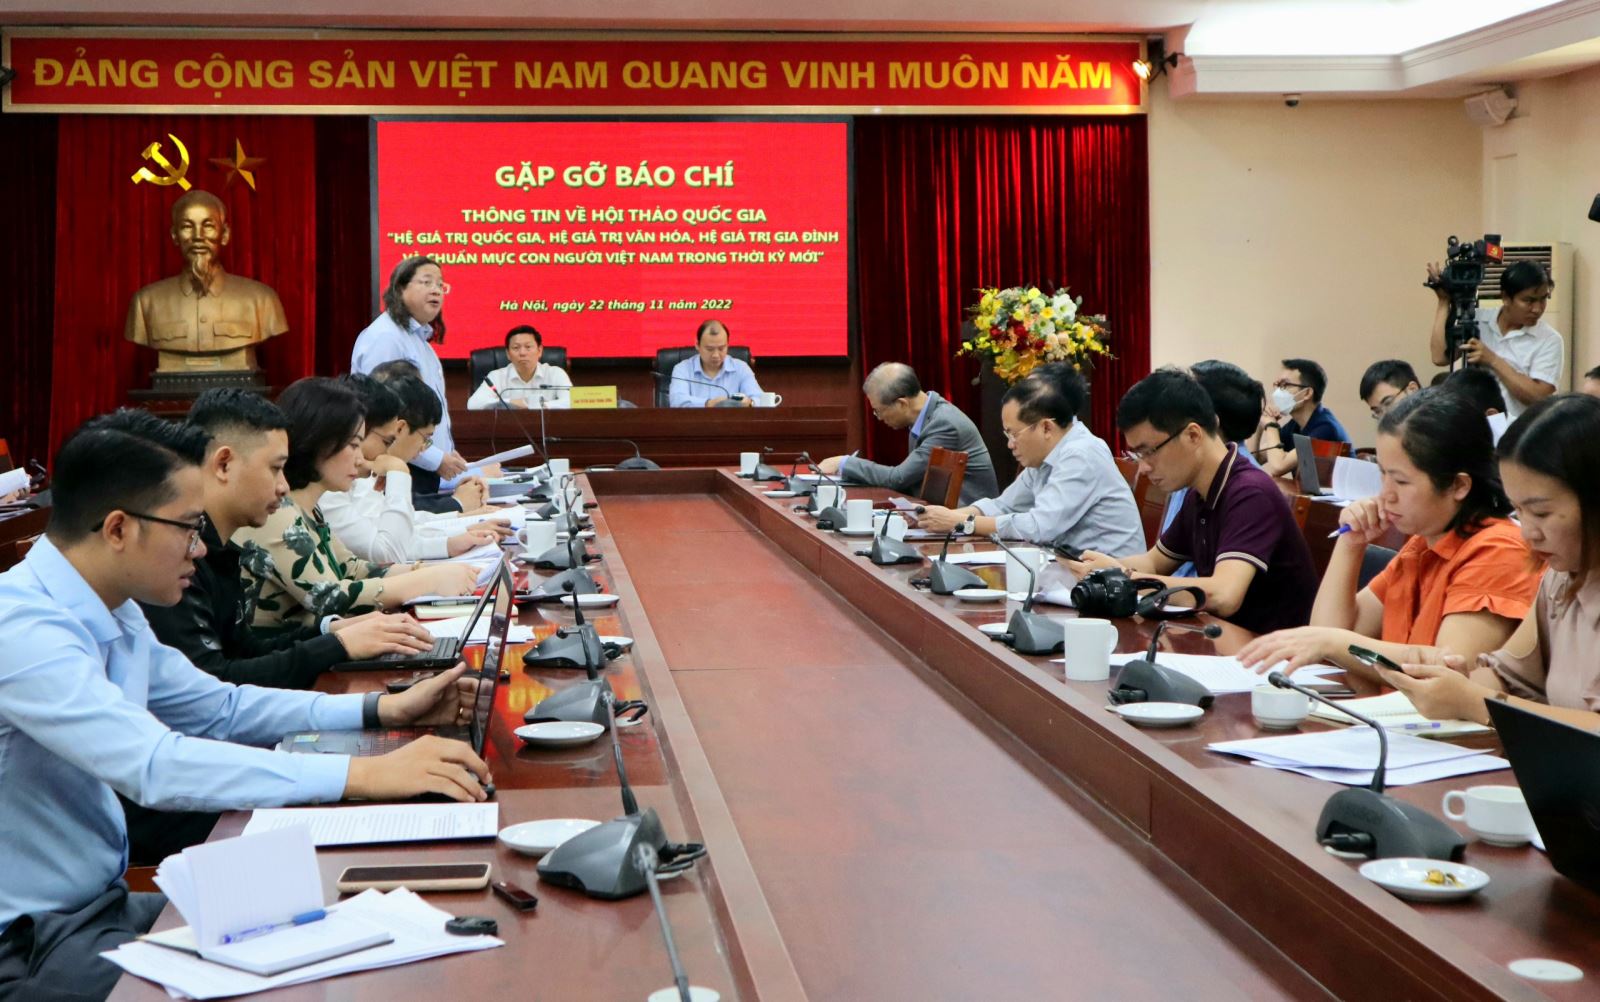 Ngày 29-11: Hội thảo quốc gia về các hệ giá trị và chuẩn mực con người Việt Nam trong thời kỳ mới